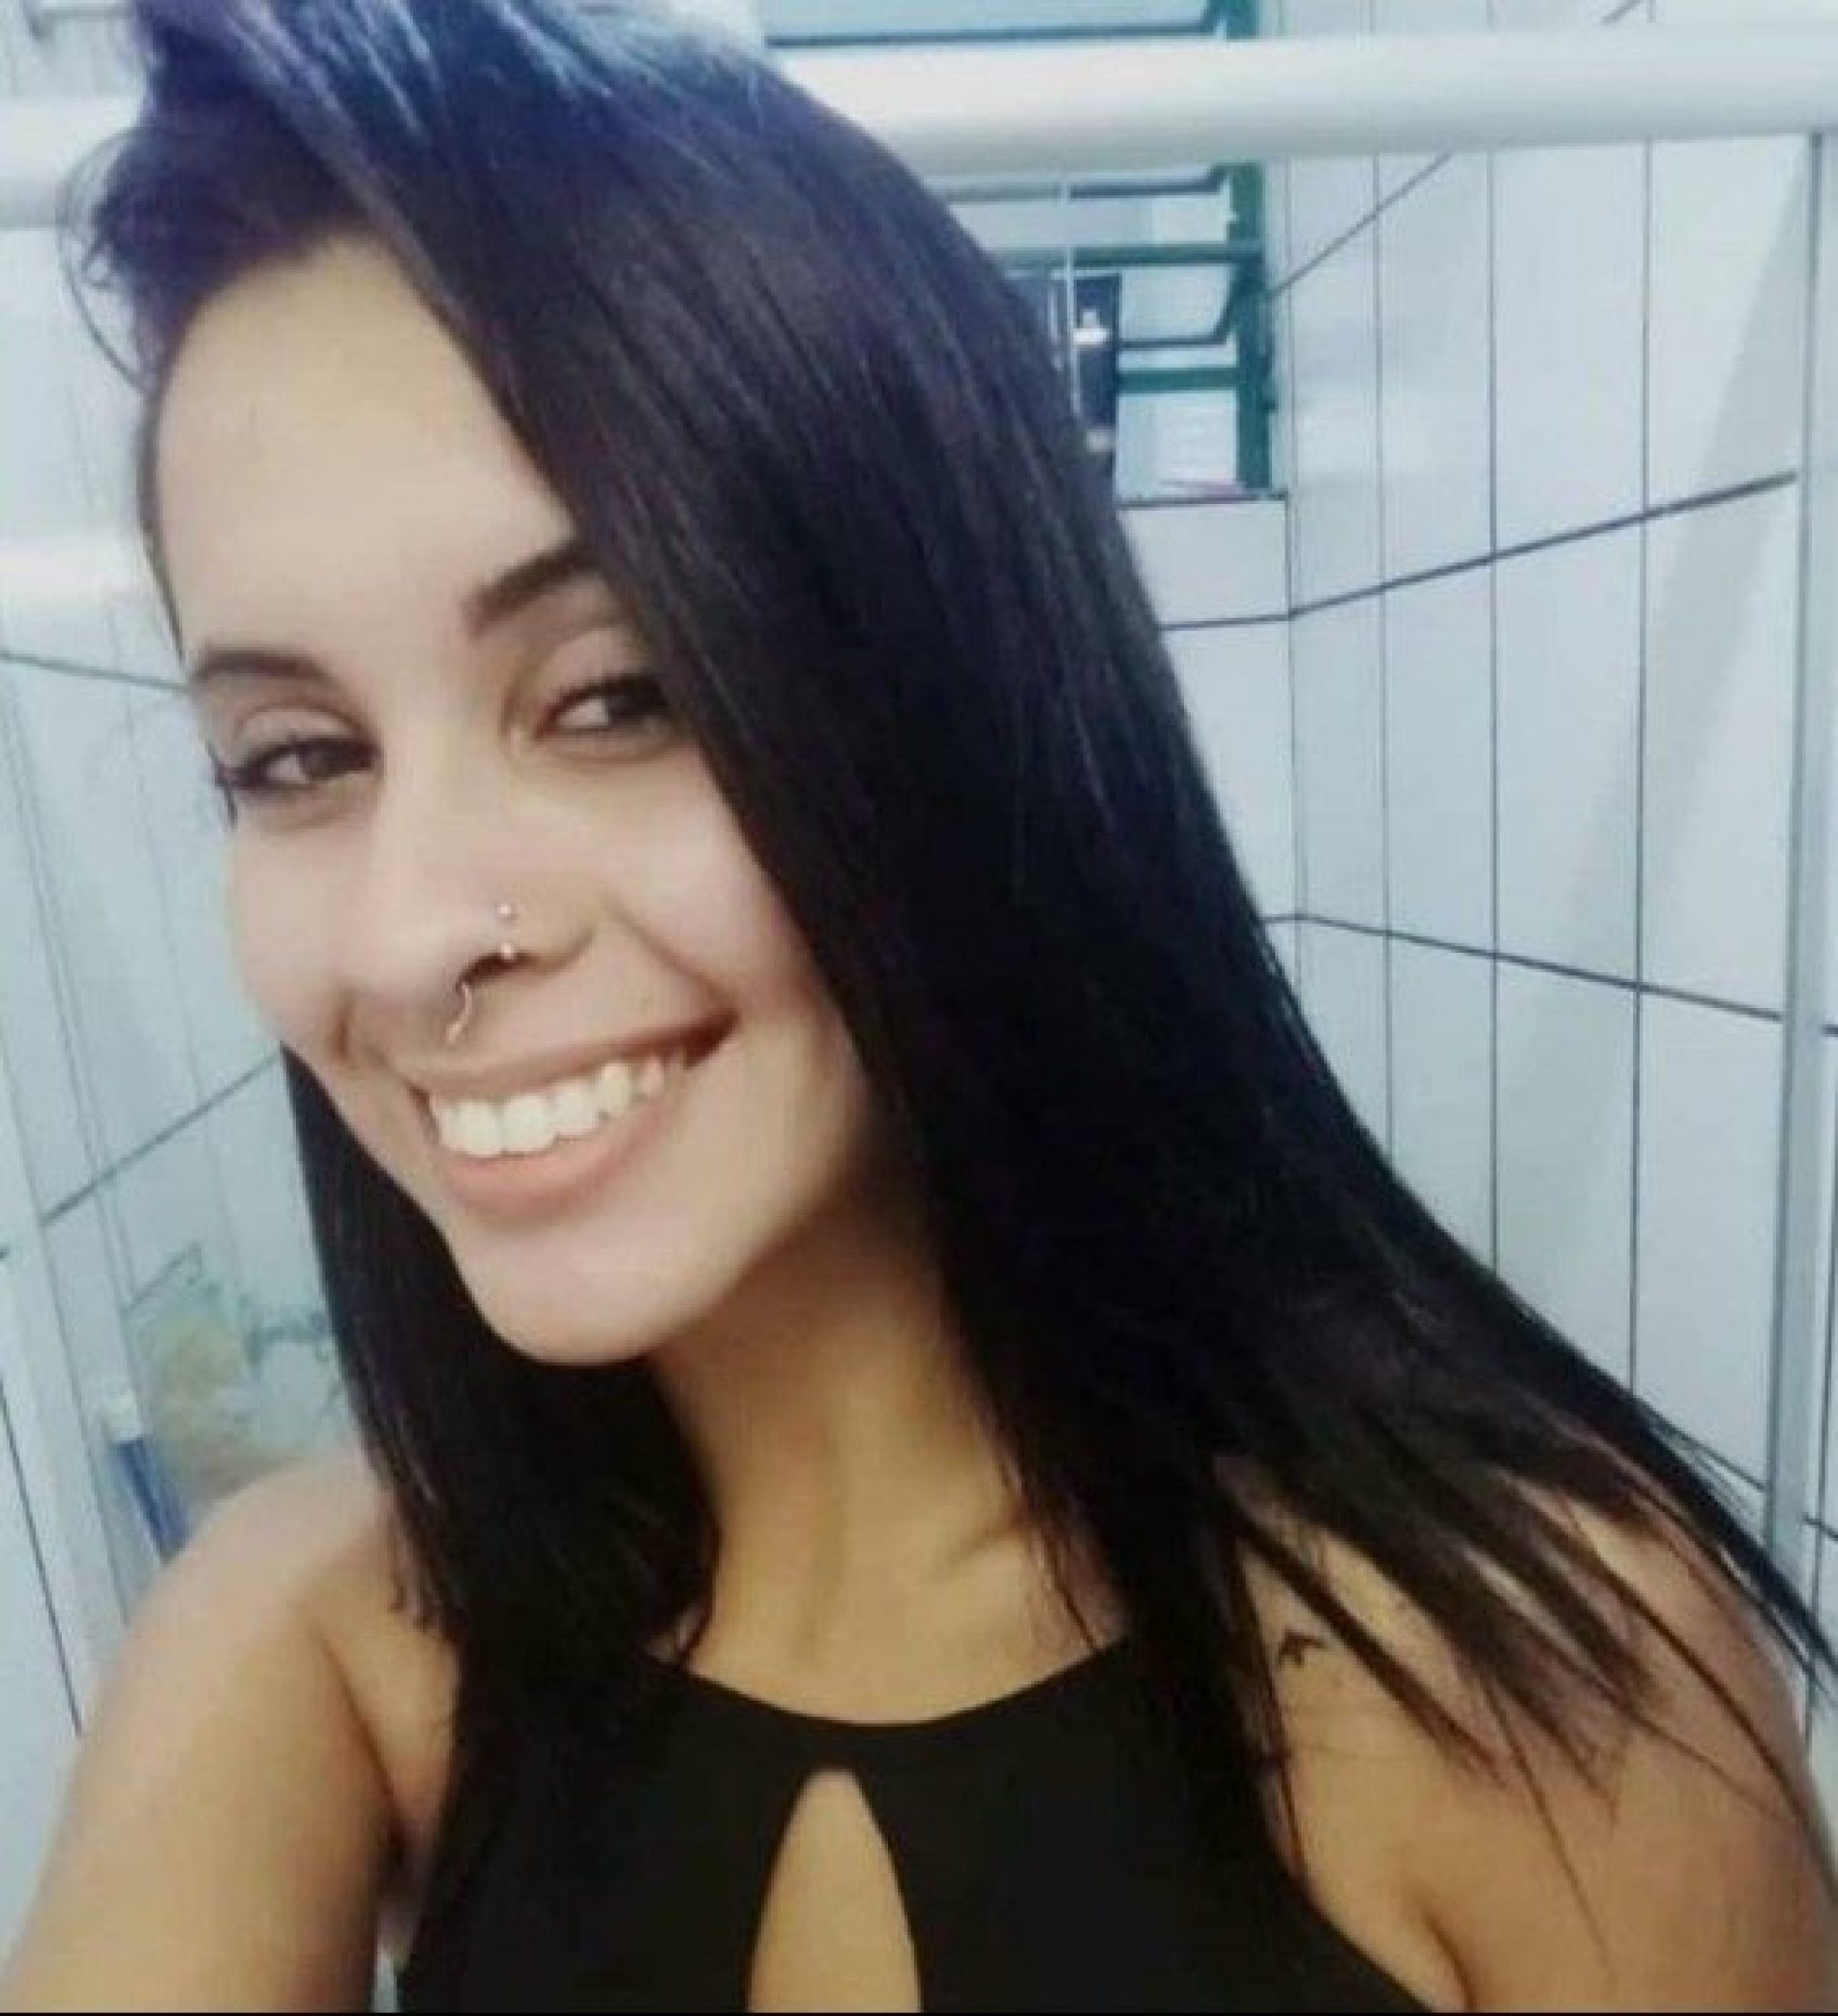 REGIÃO: Jovem encontrada morta enrolada em tapete tinha camiseta enfiada na boca